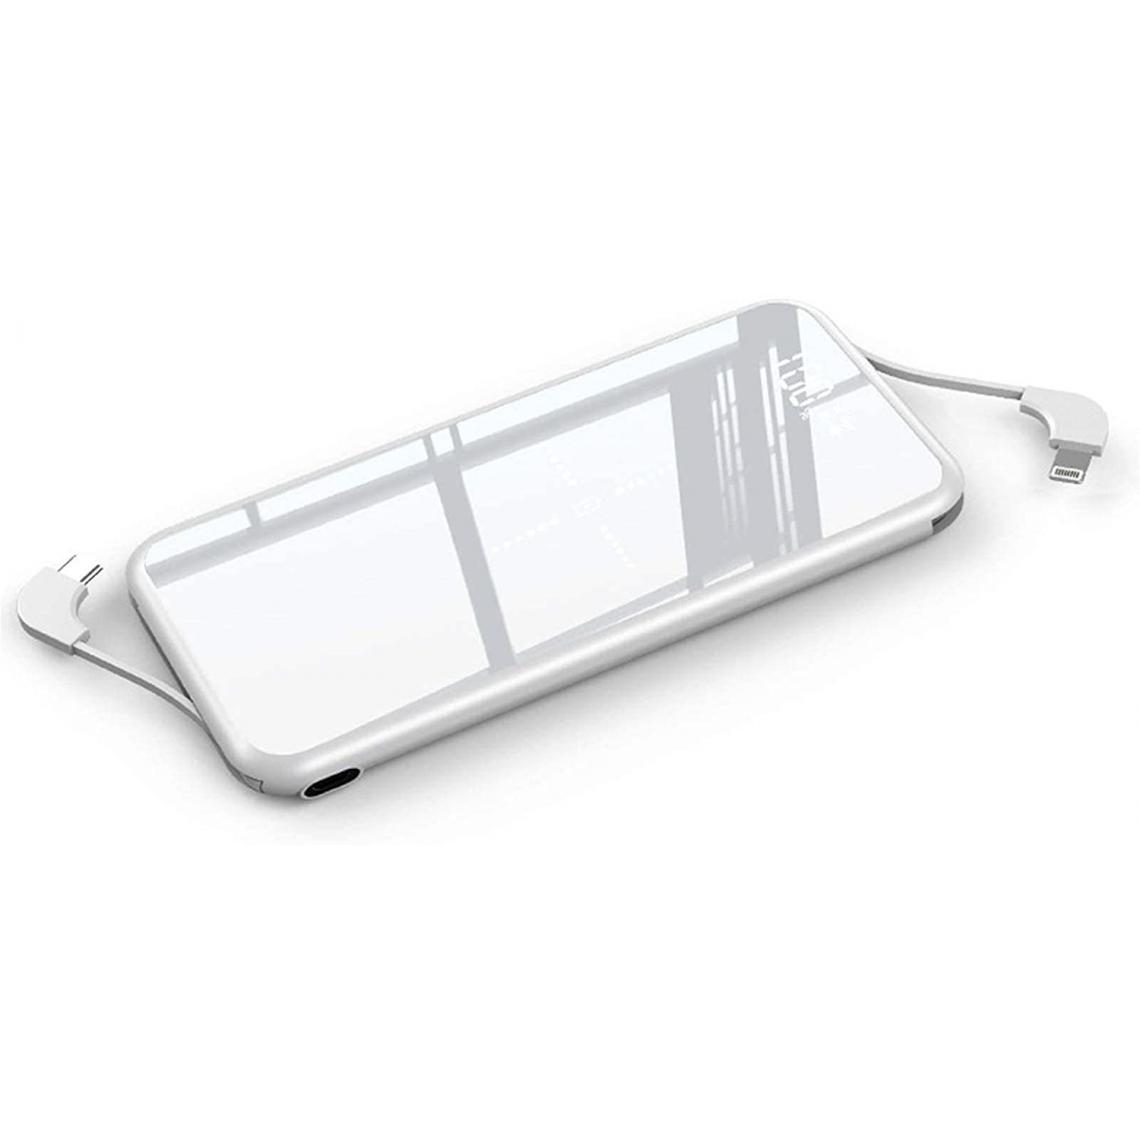 Chrono - Banque D'alimentation de Charge Sans Fil, Chargeur Portable 10000 mAh Batterie Haute Capacité(Blanc) - Chargeur secteur téléphone